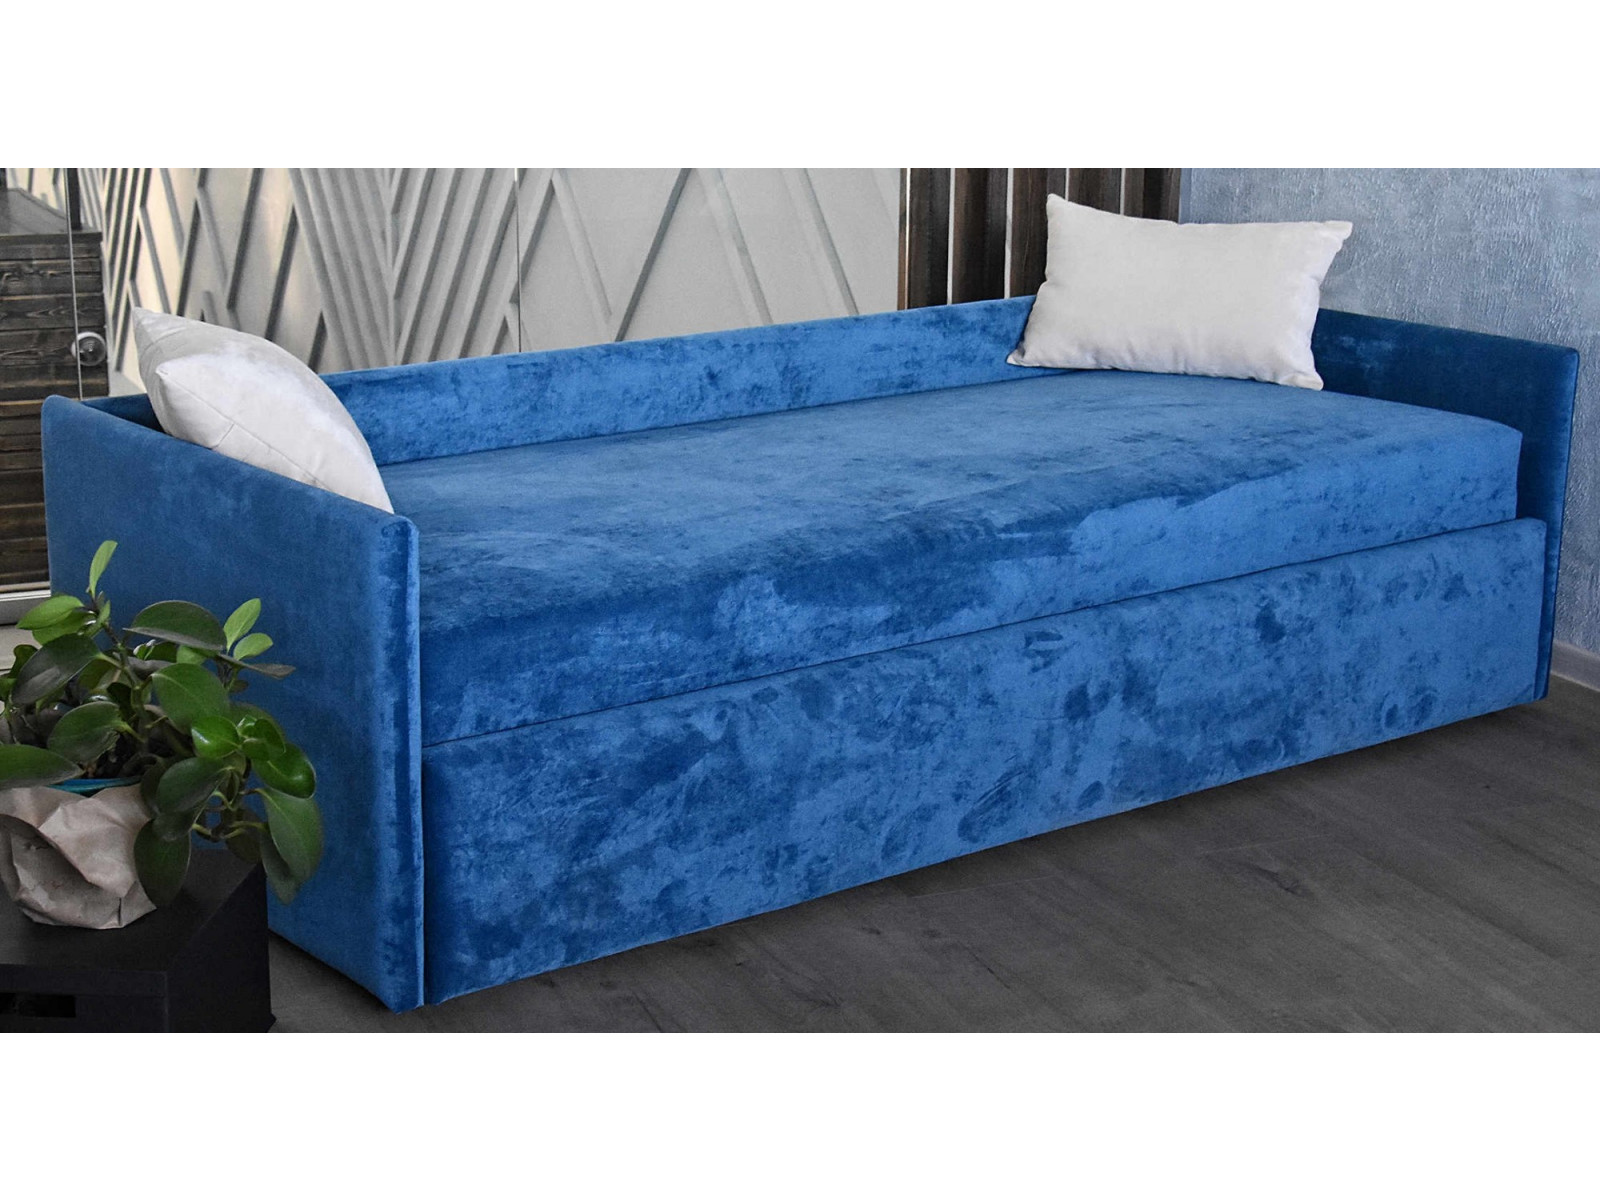 Диван-кровать с низкой спинкой Constructor купить по выгодной цене в интернет-магазине MiaSofia